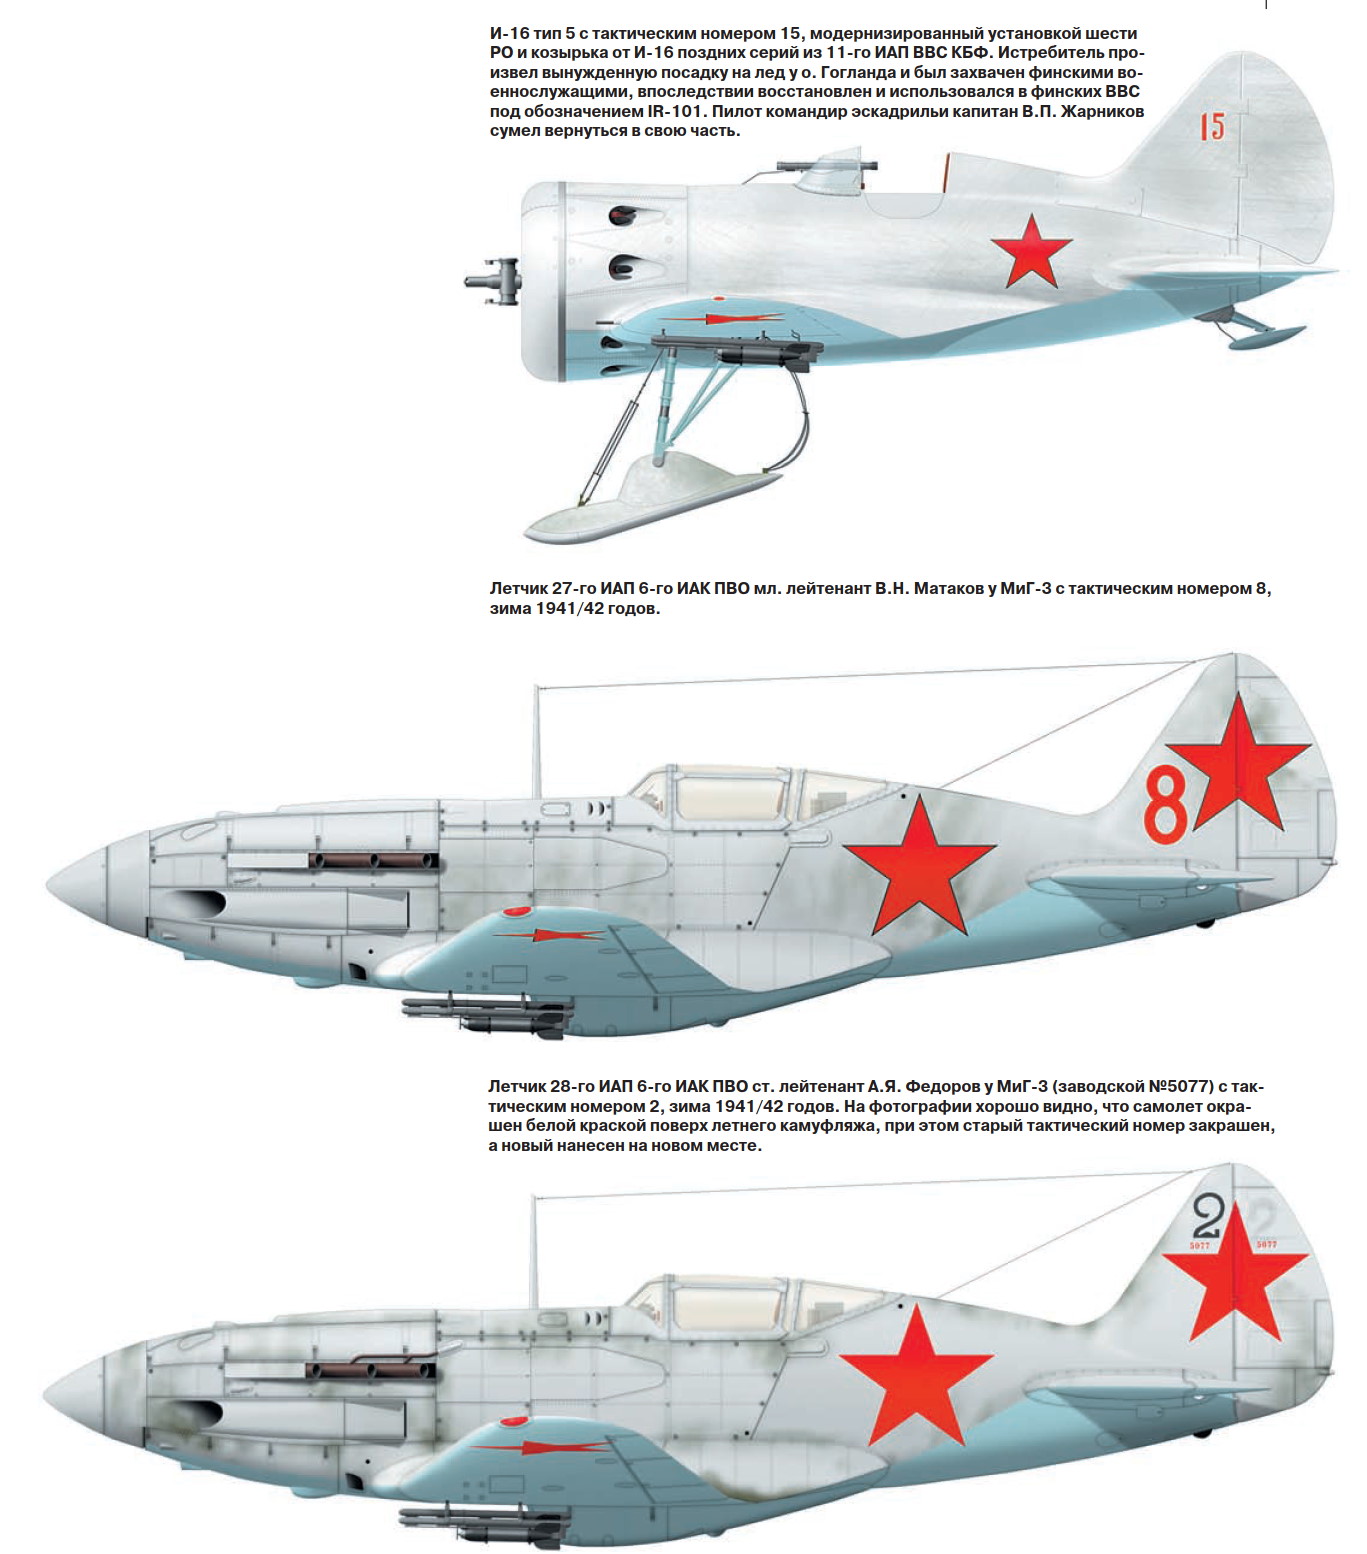 1706474823 960 Polikarpov and MiG